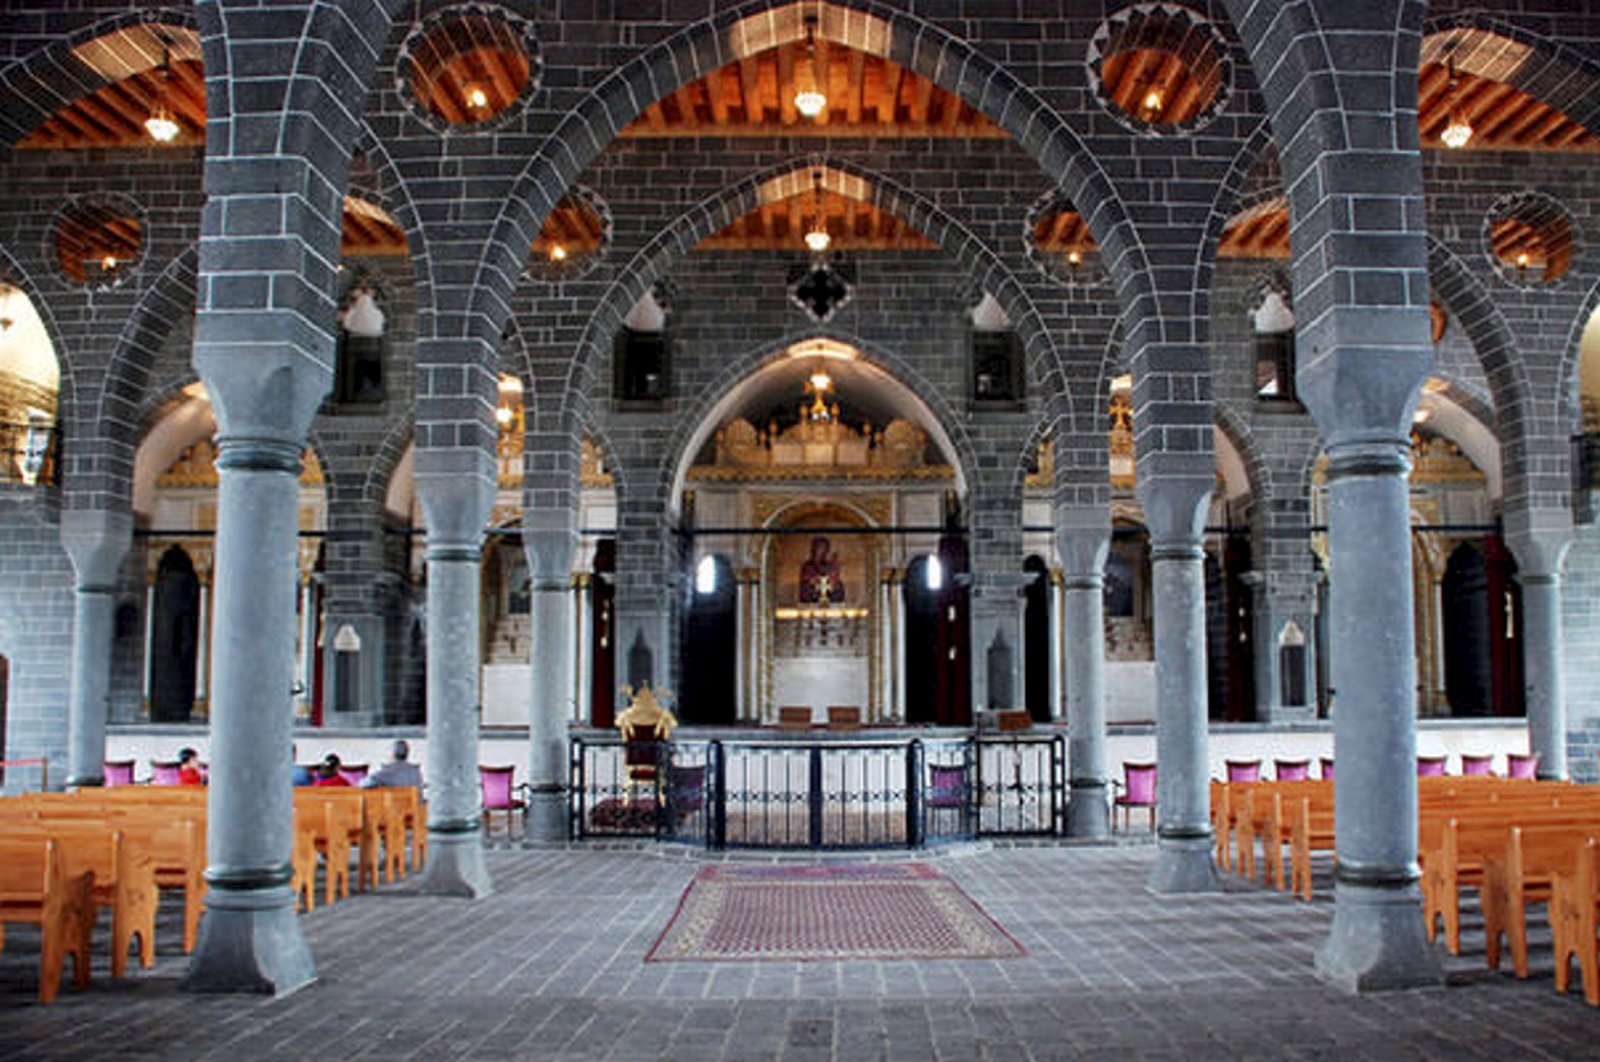 Lonceng berdering sekali lagi di gereja Armenia bersejarah di Turki